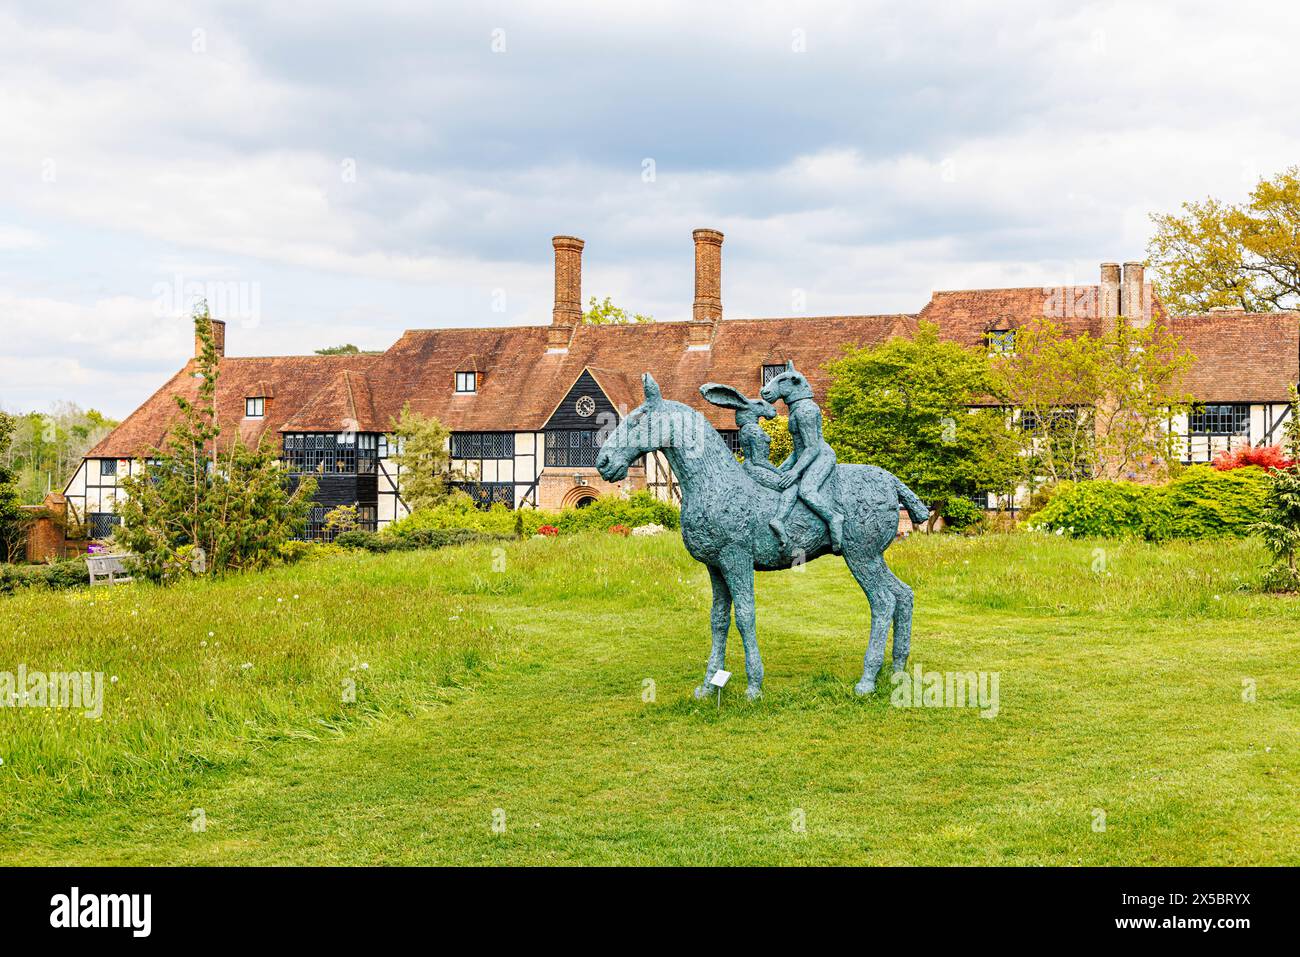 Bronzestatue „Lovers on Horseback“ von Sophie Ryder in der Nähe des Laboratory Building im RHS Garden Wisley, Surrey, Südosten Englands im Frühjahr Stockfoto